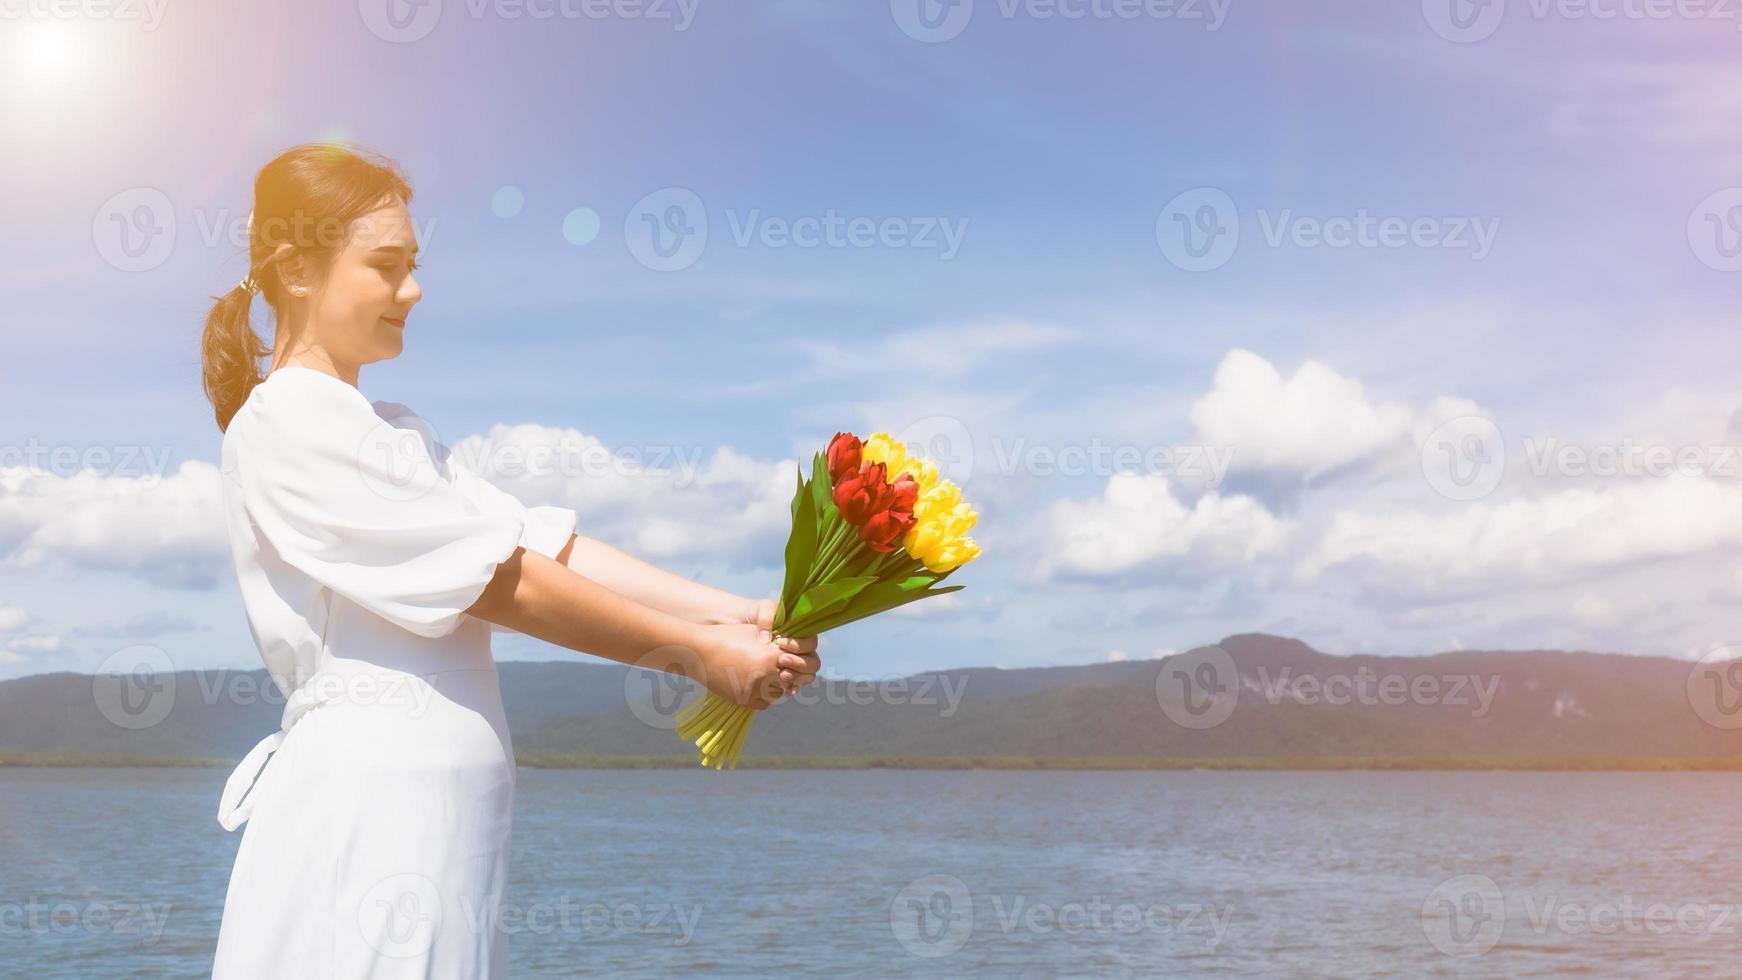 eine junge asiatin in einem weißen kleid hält am seehafen einen blumenstrauß aus gelben und roten blumen. im Sonnenlicht ist der Himmel klar, der Wind weht. foto